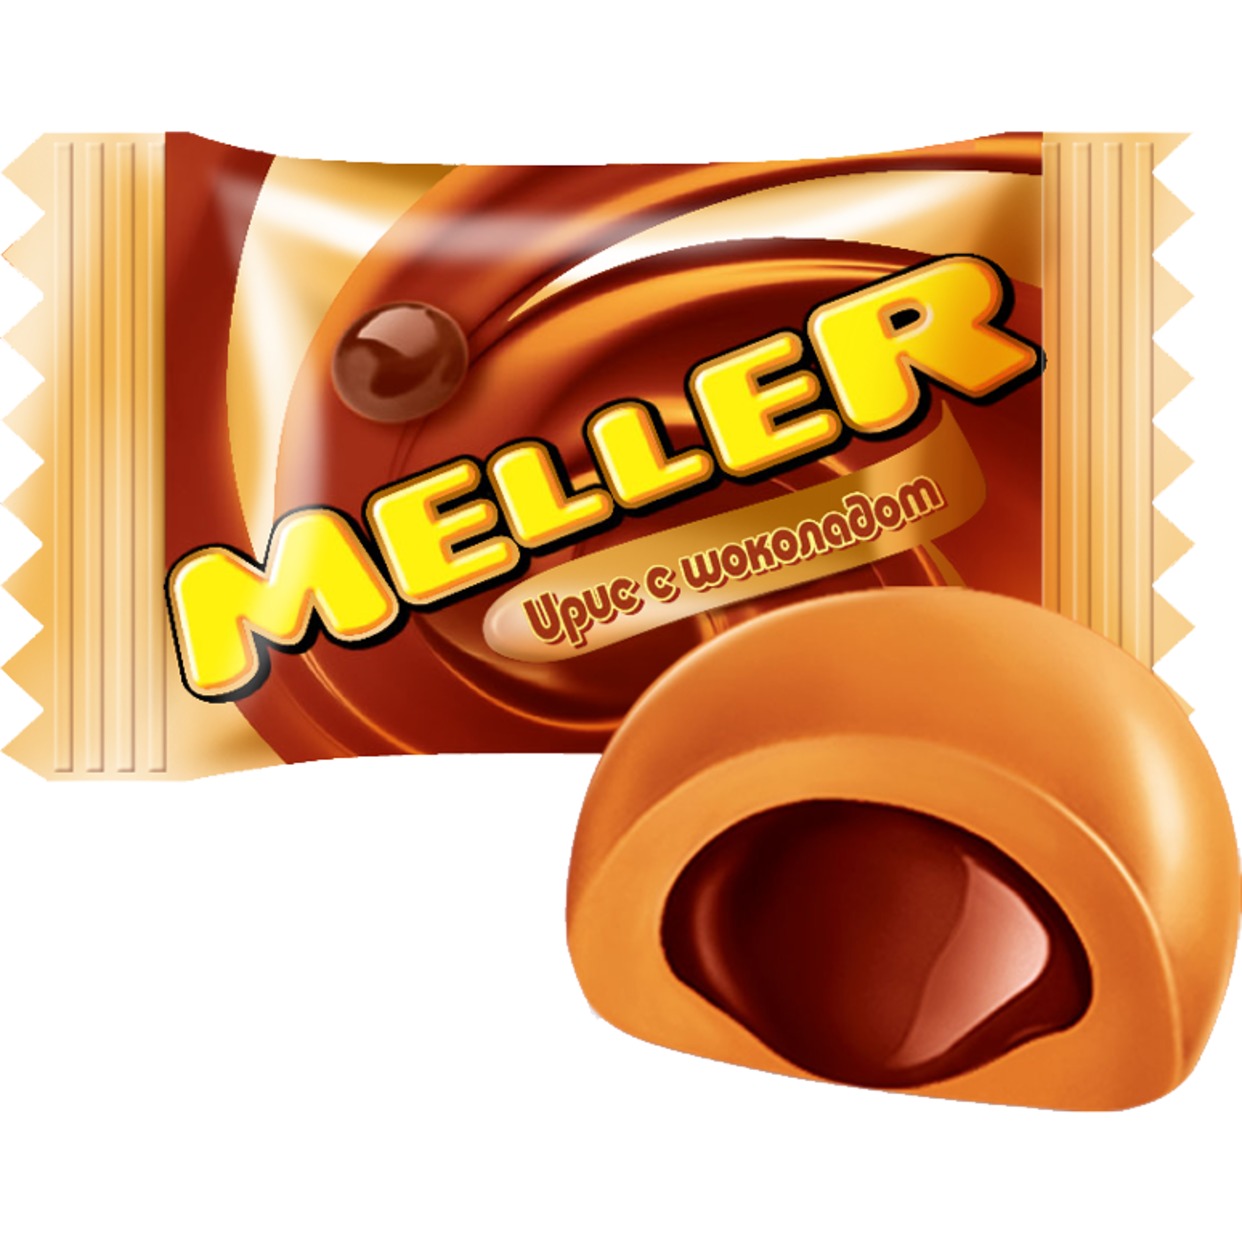 Ирис Meller с шоколадом по акции в Пятерочке